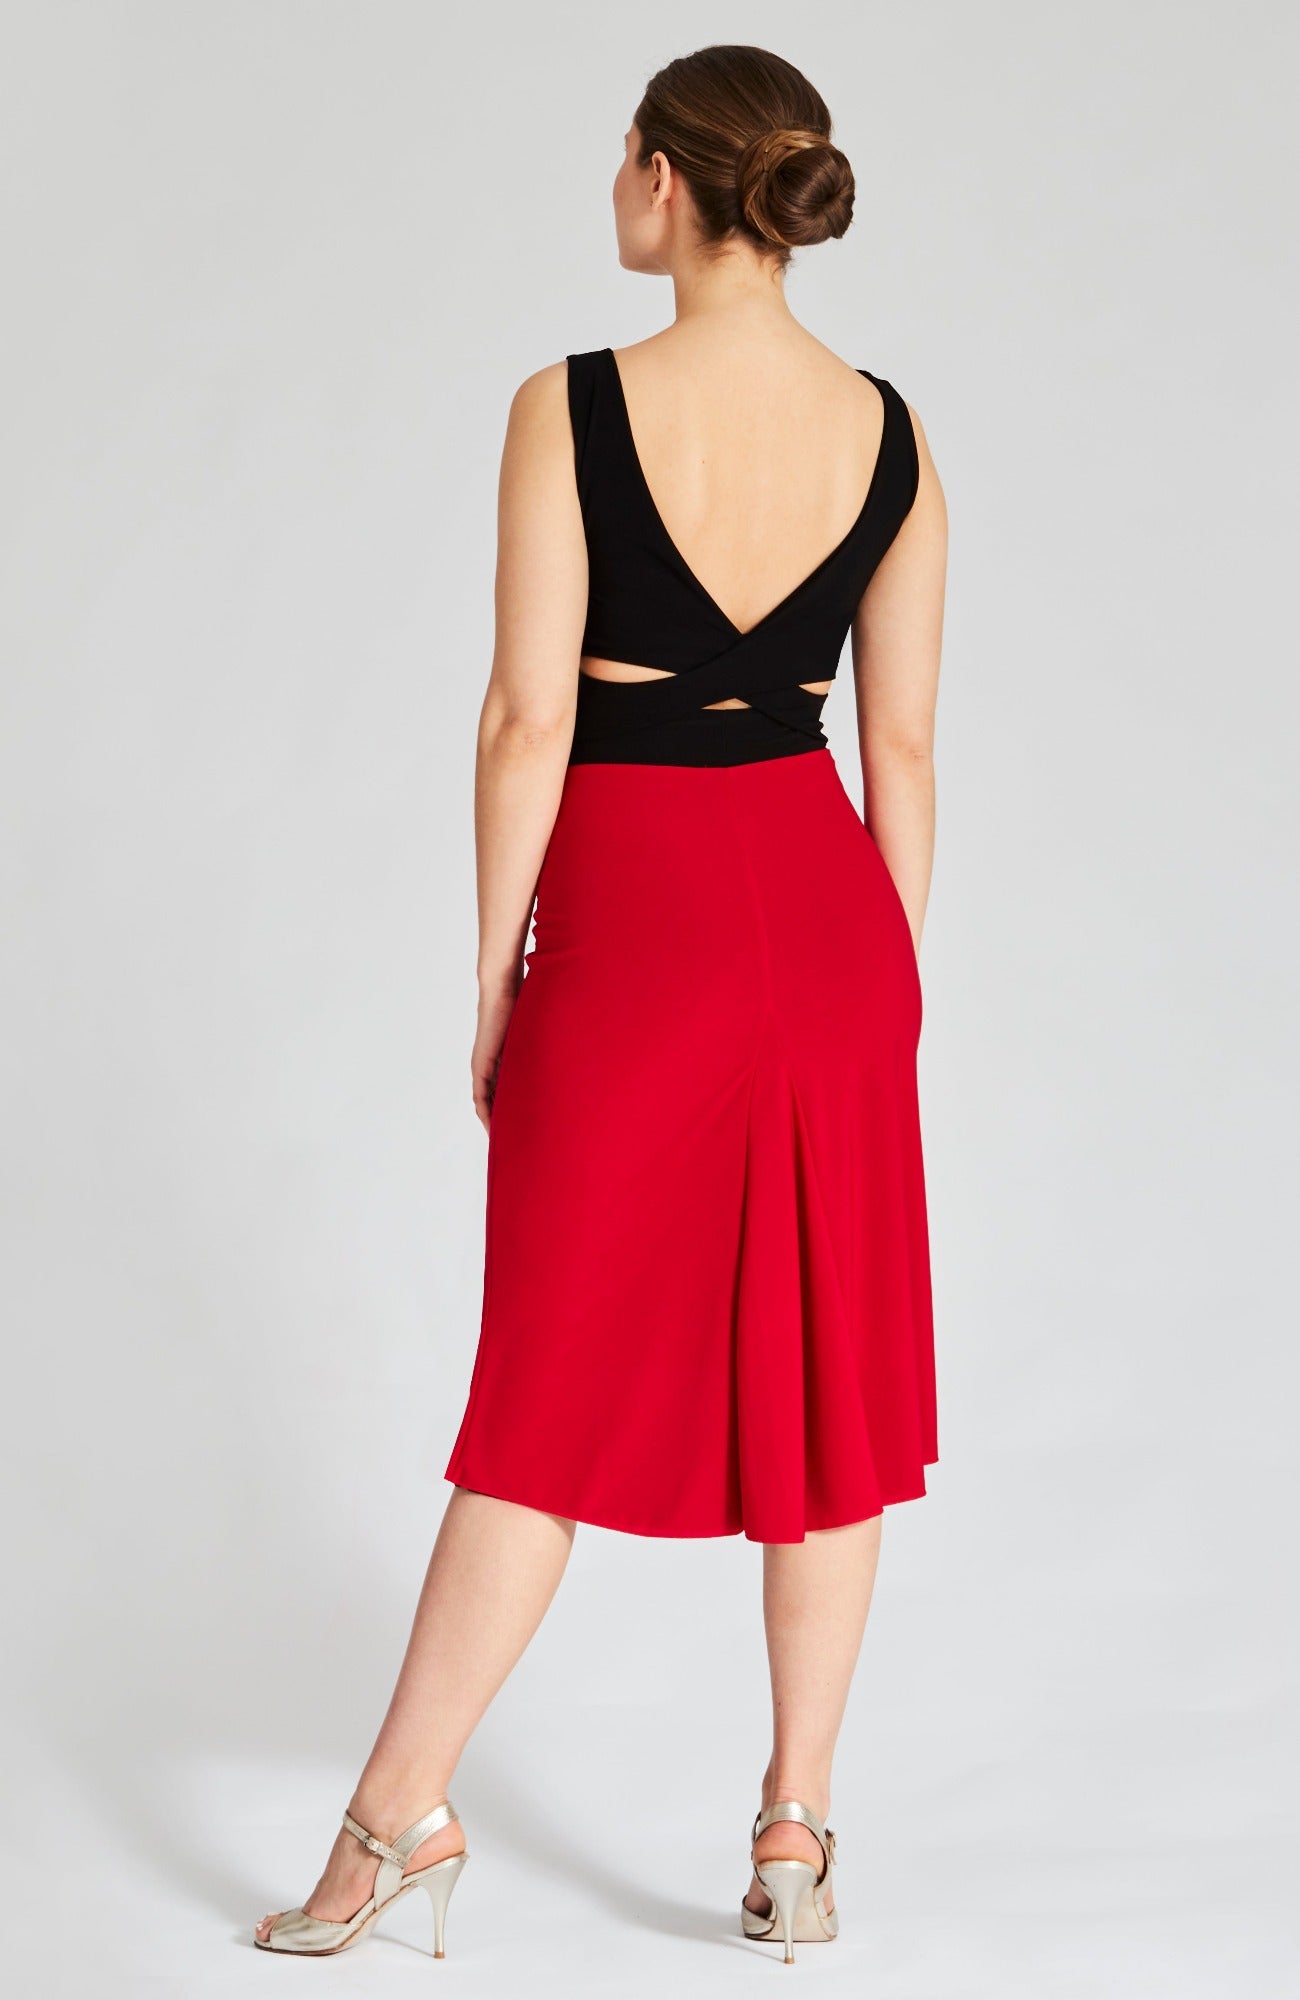 godet skirt in red and black